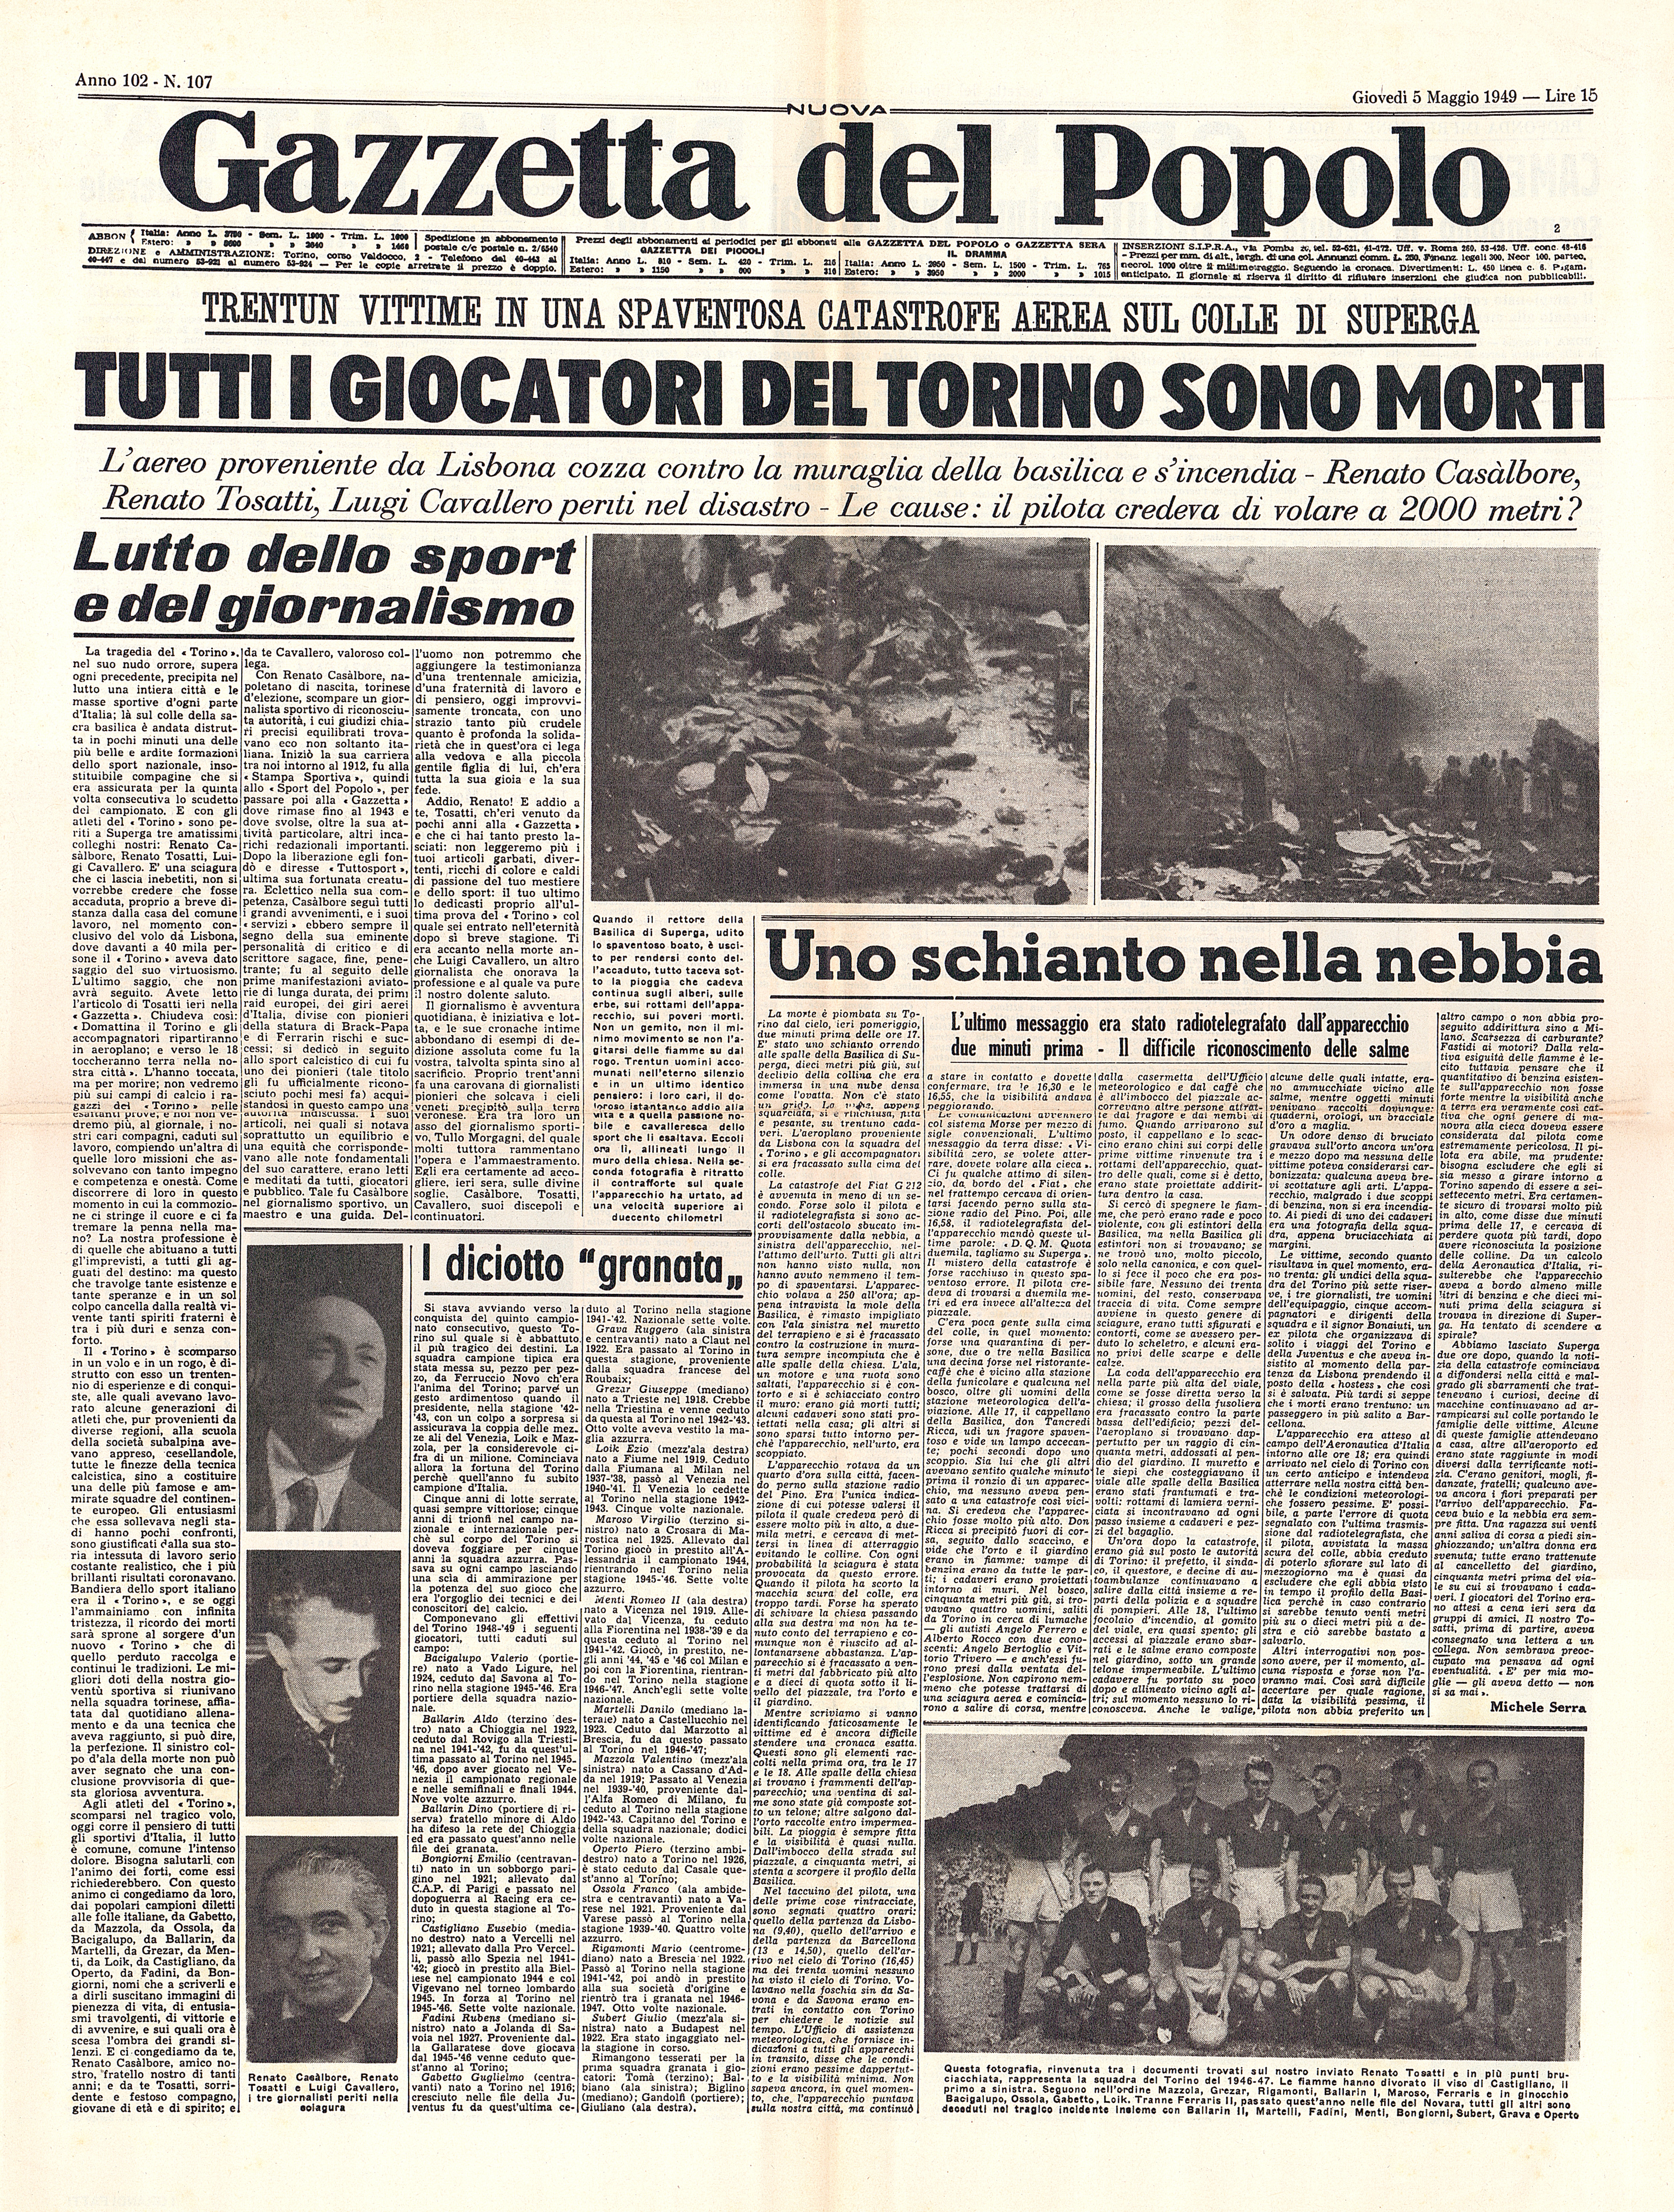 Prima pagina de "La Gazzetta del popolo", del quale nell’incidente perde la vita anche il giornalista Renato Tosatti